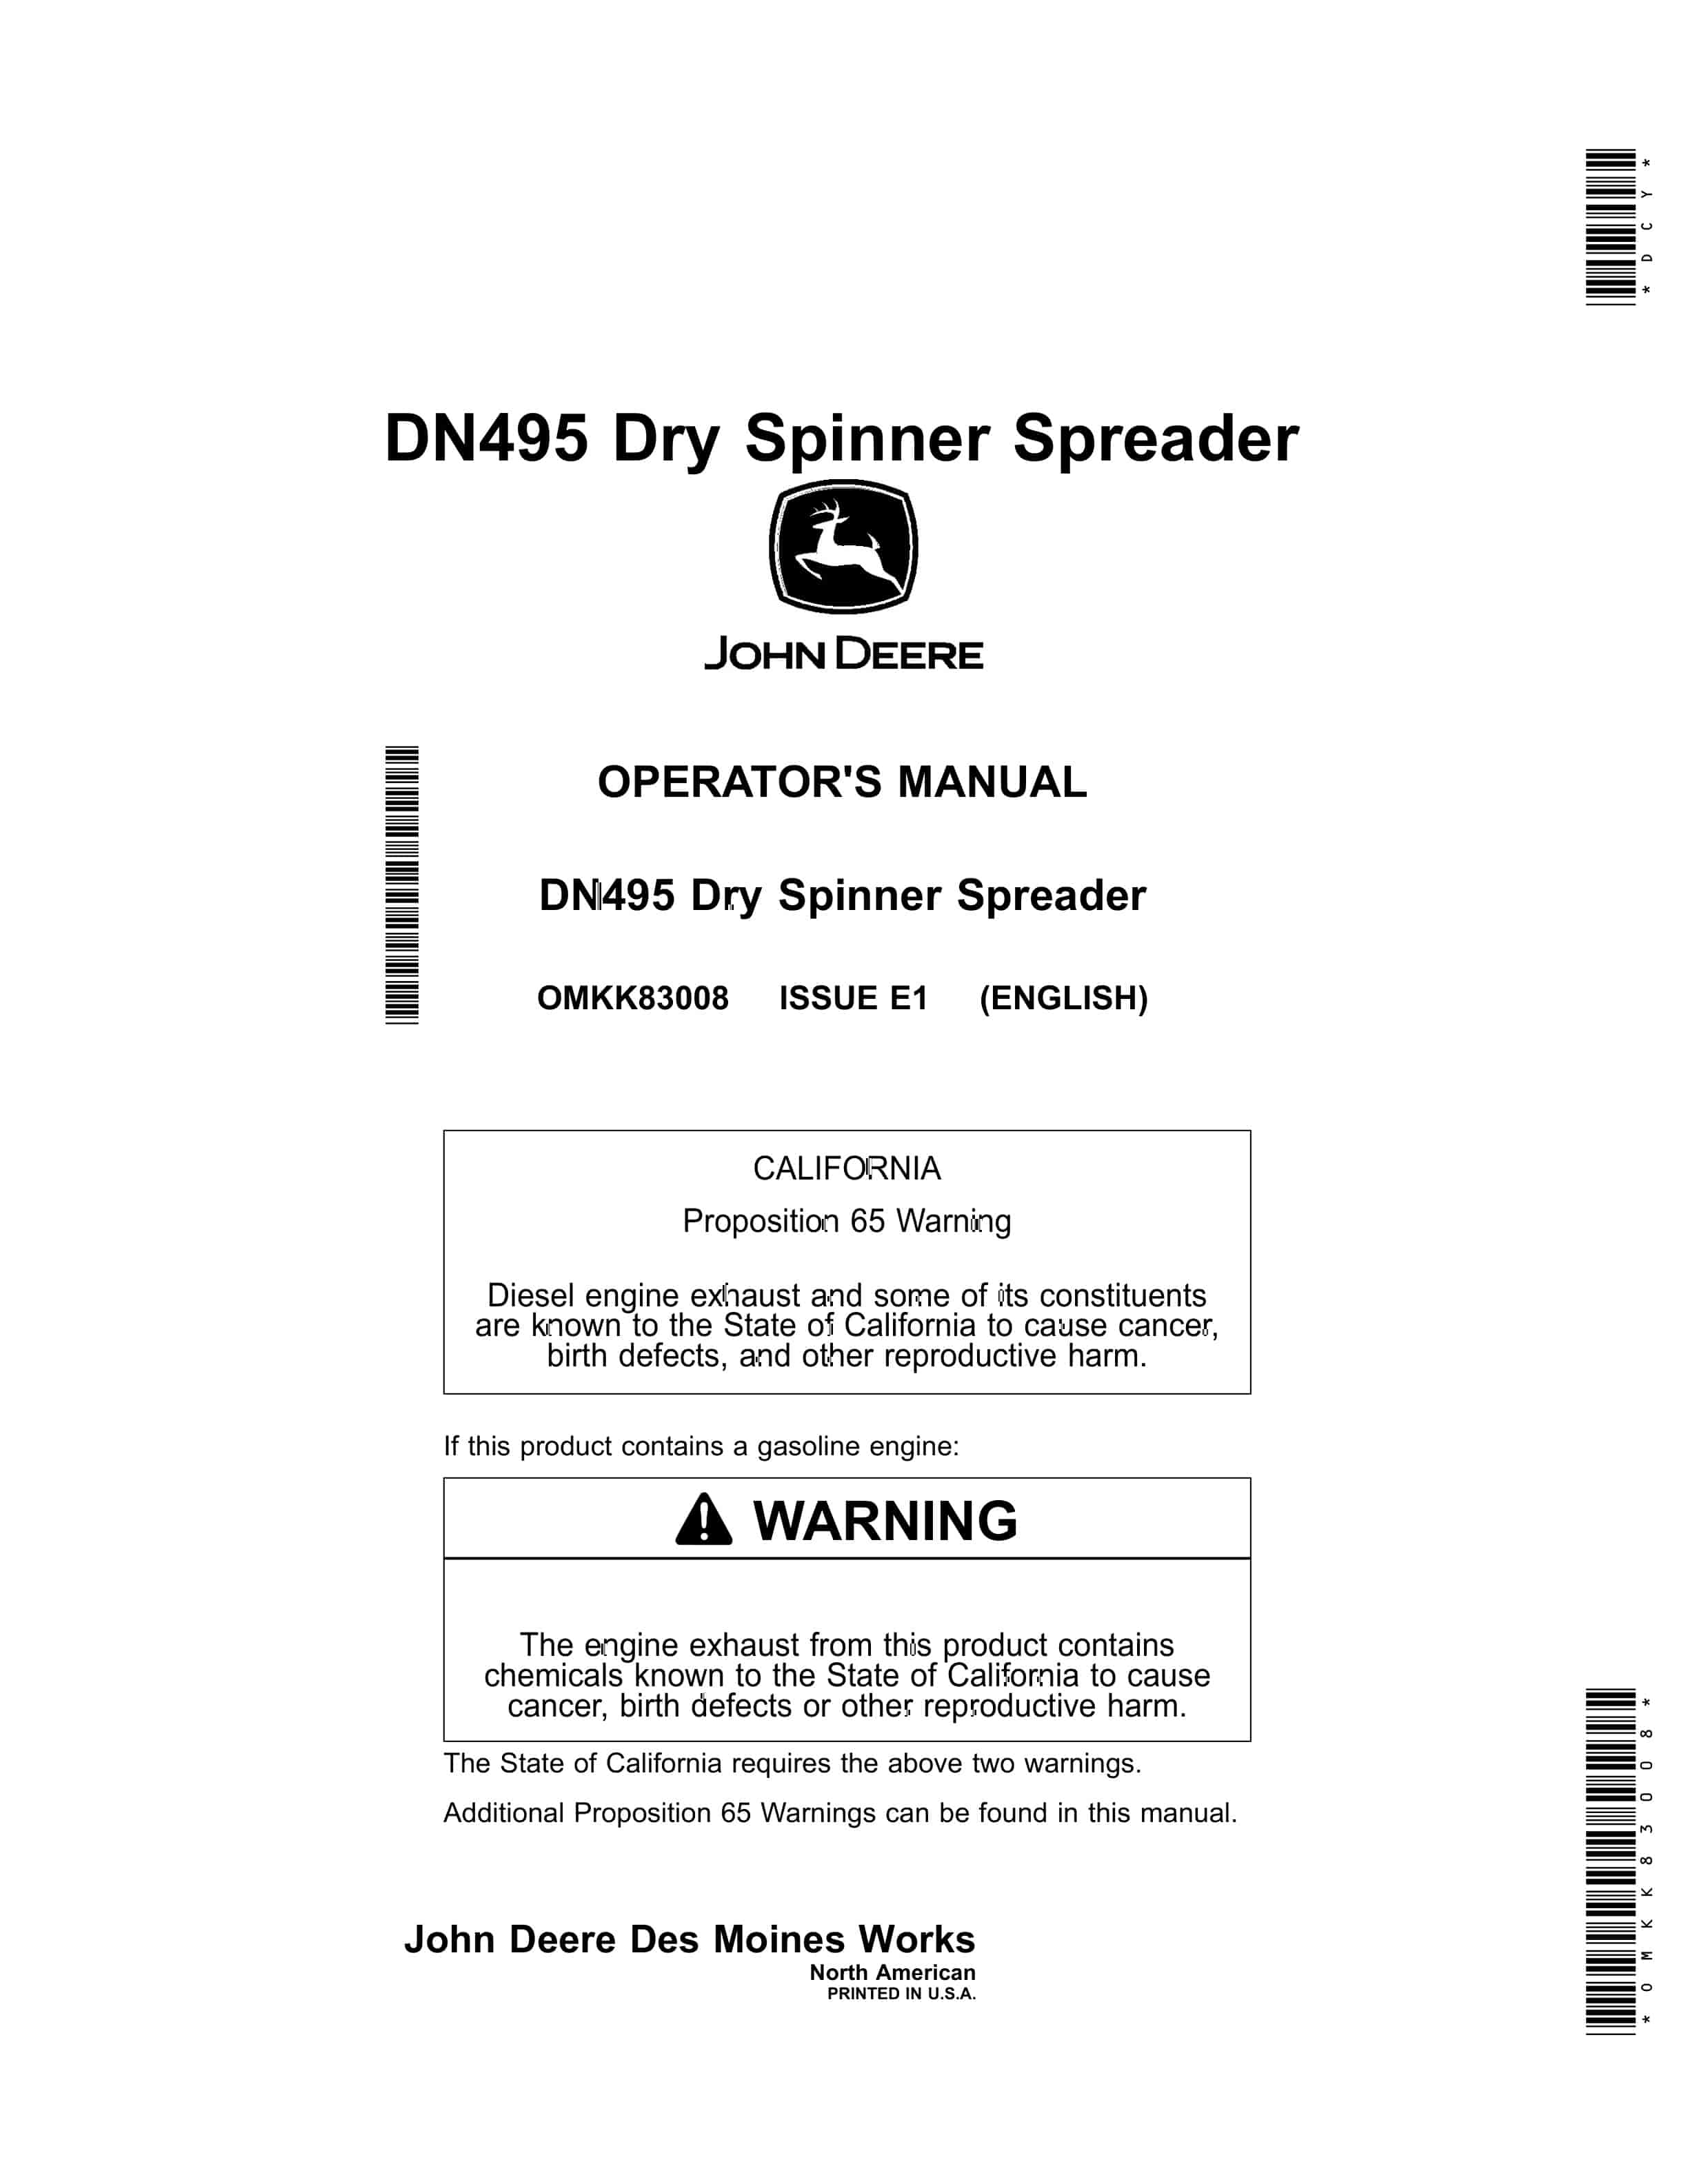 John Deere DN495 Dry Spinner Spreader Operator Manual OMKK83008 1